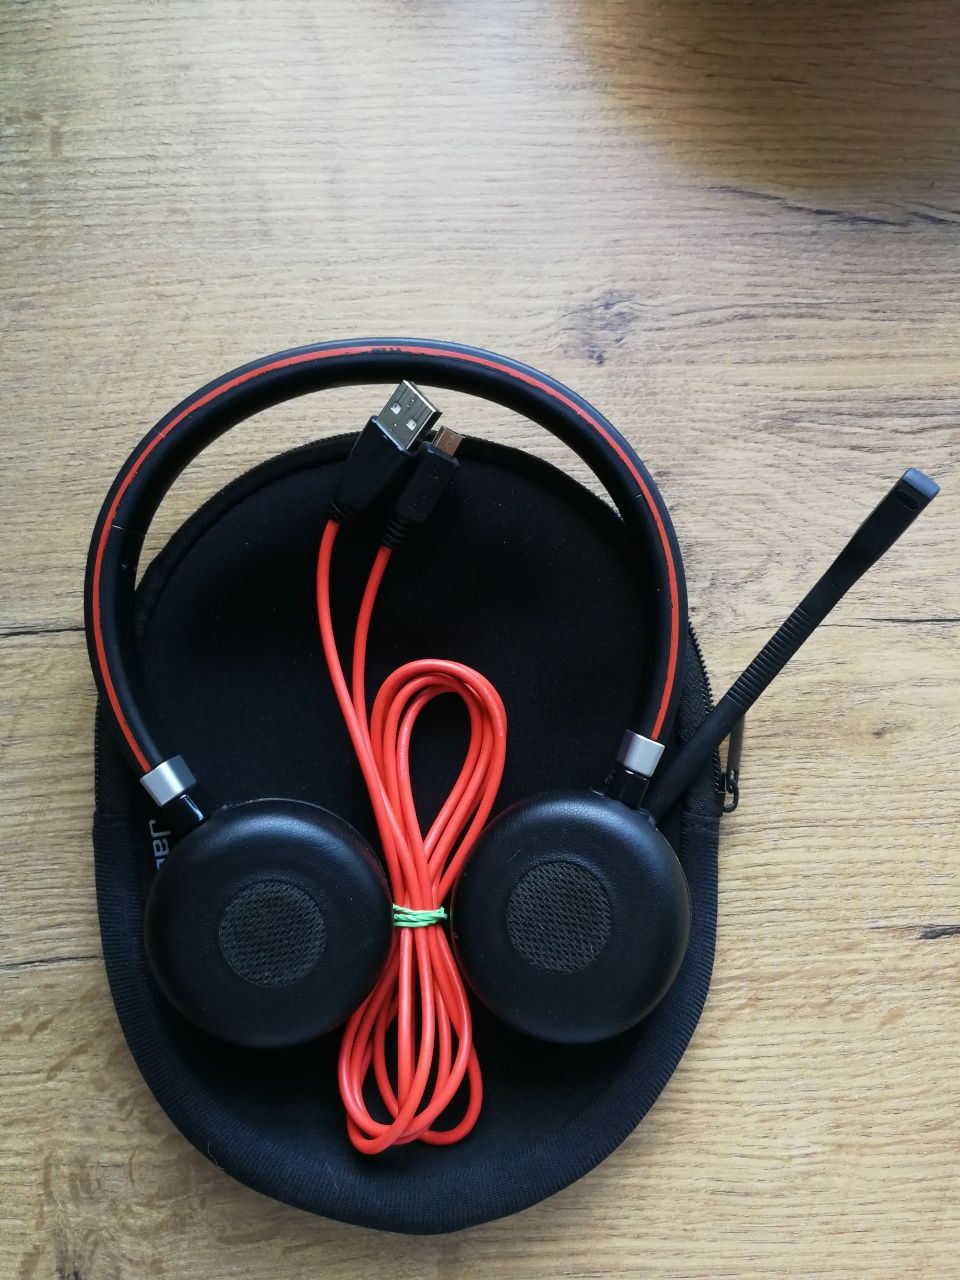 PROF headset Jabra Evolve 65 MS w dobrym stanie wizualnym i techniczny